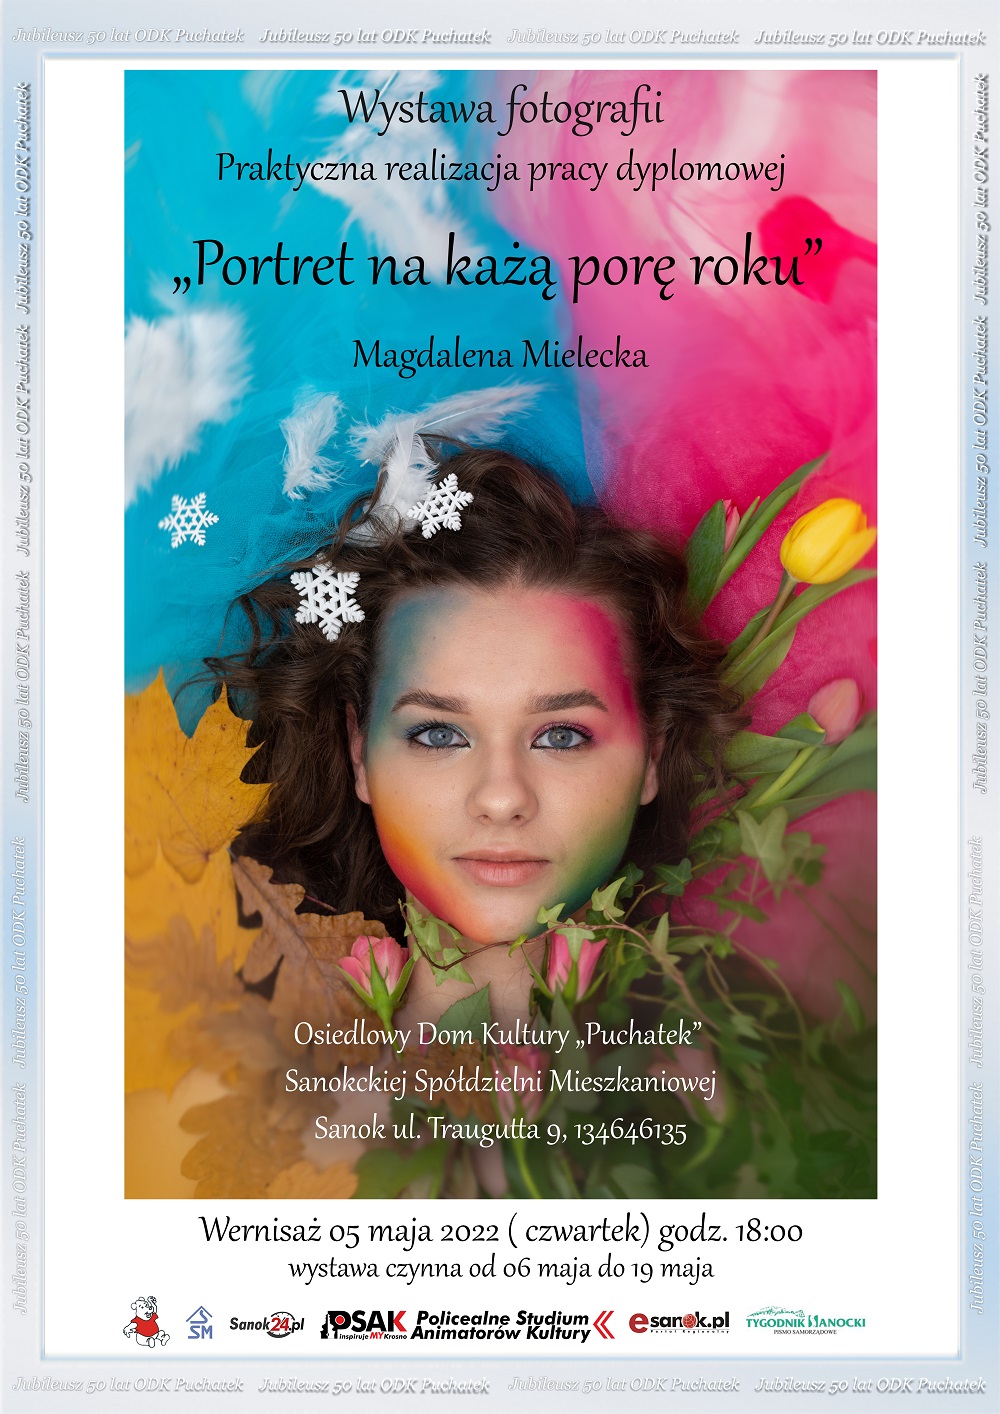 Plakat informujący o wystawie fotograficznej słuchaczki Studium. Głowa dziewczyny na kolorowym tle tle.  